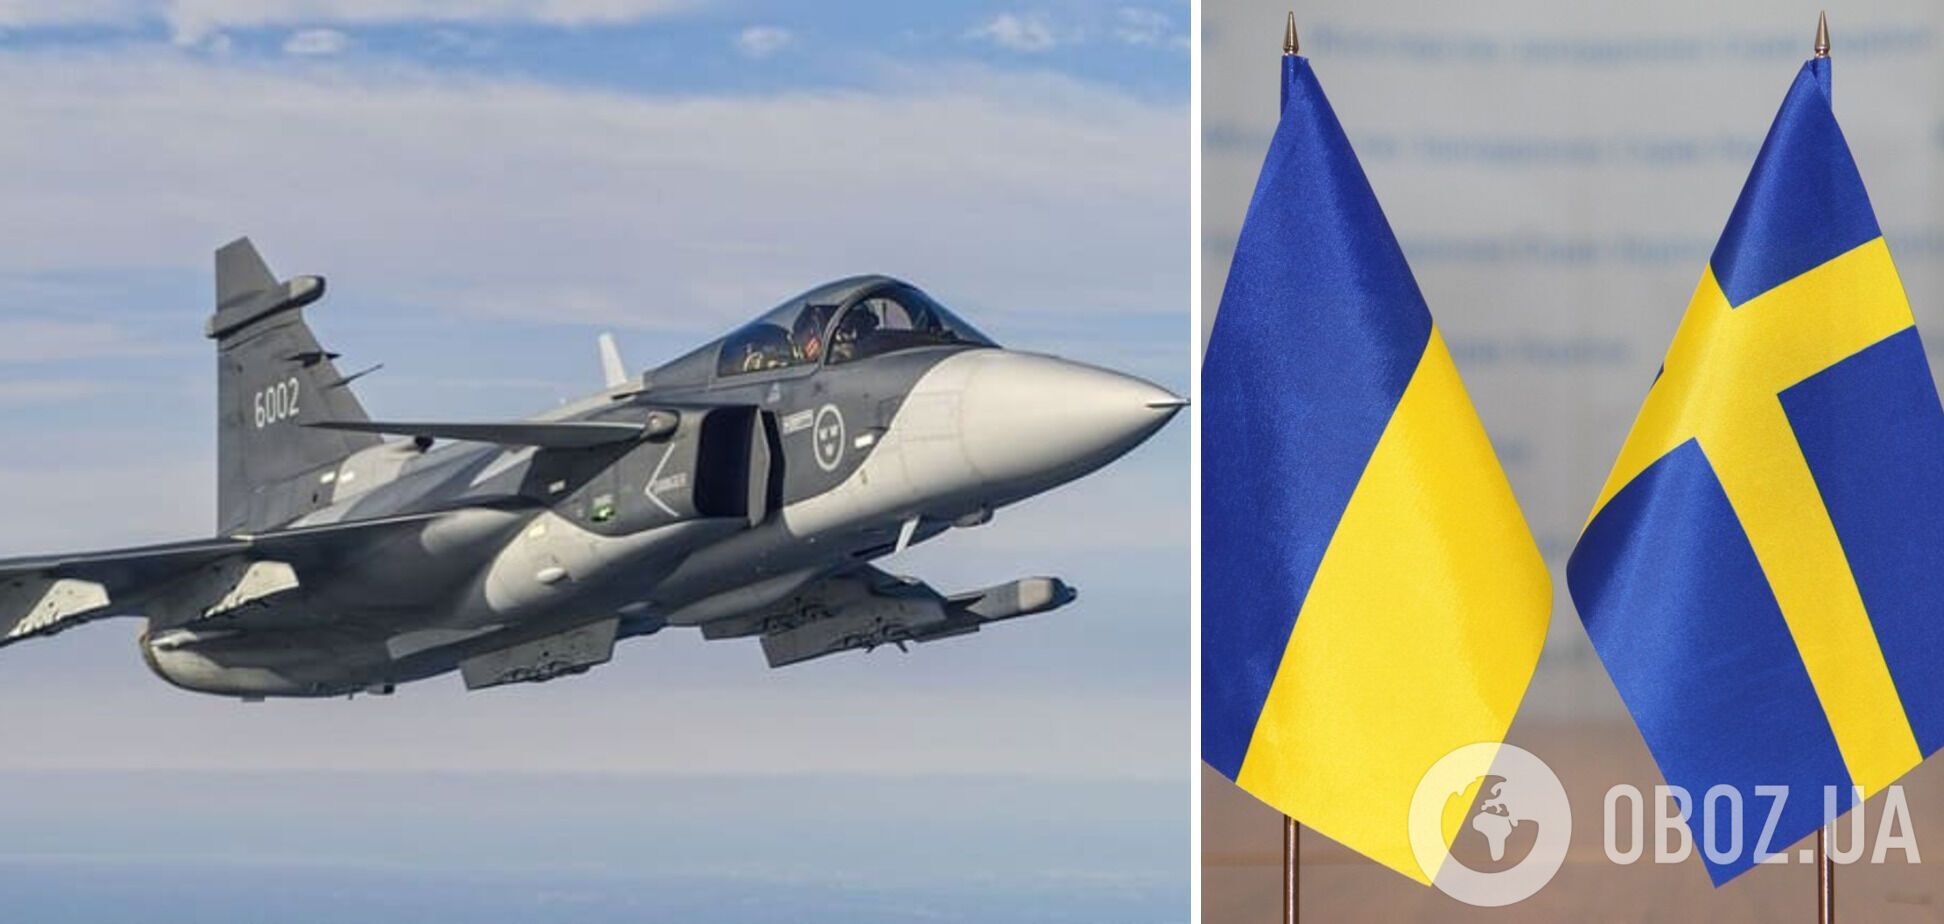 Швеция готовится к потенциальной передаче Украине истребителей Gripen: чем отличаются от F-16 и какой вариант лучше для ВСУ